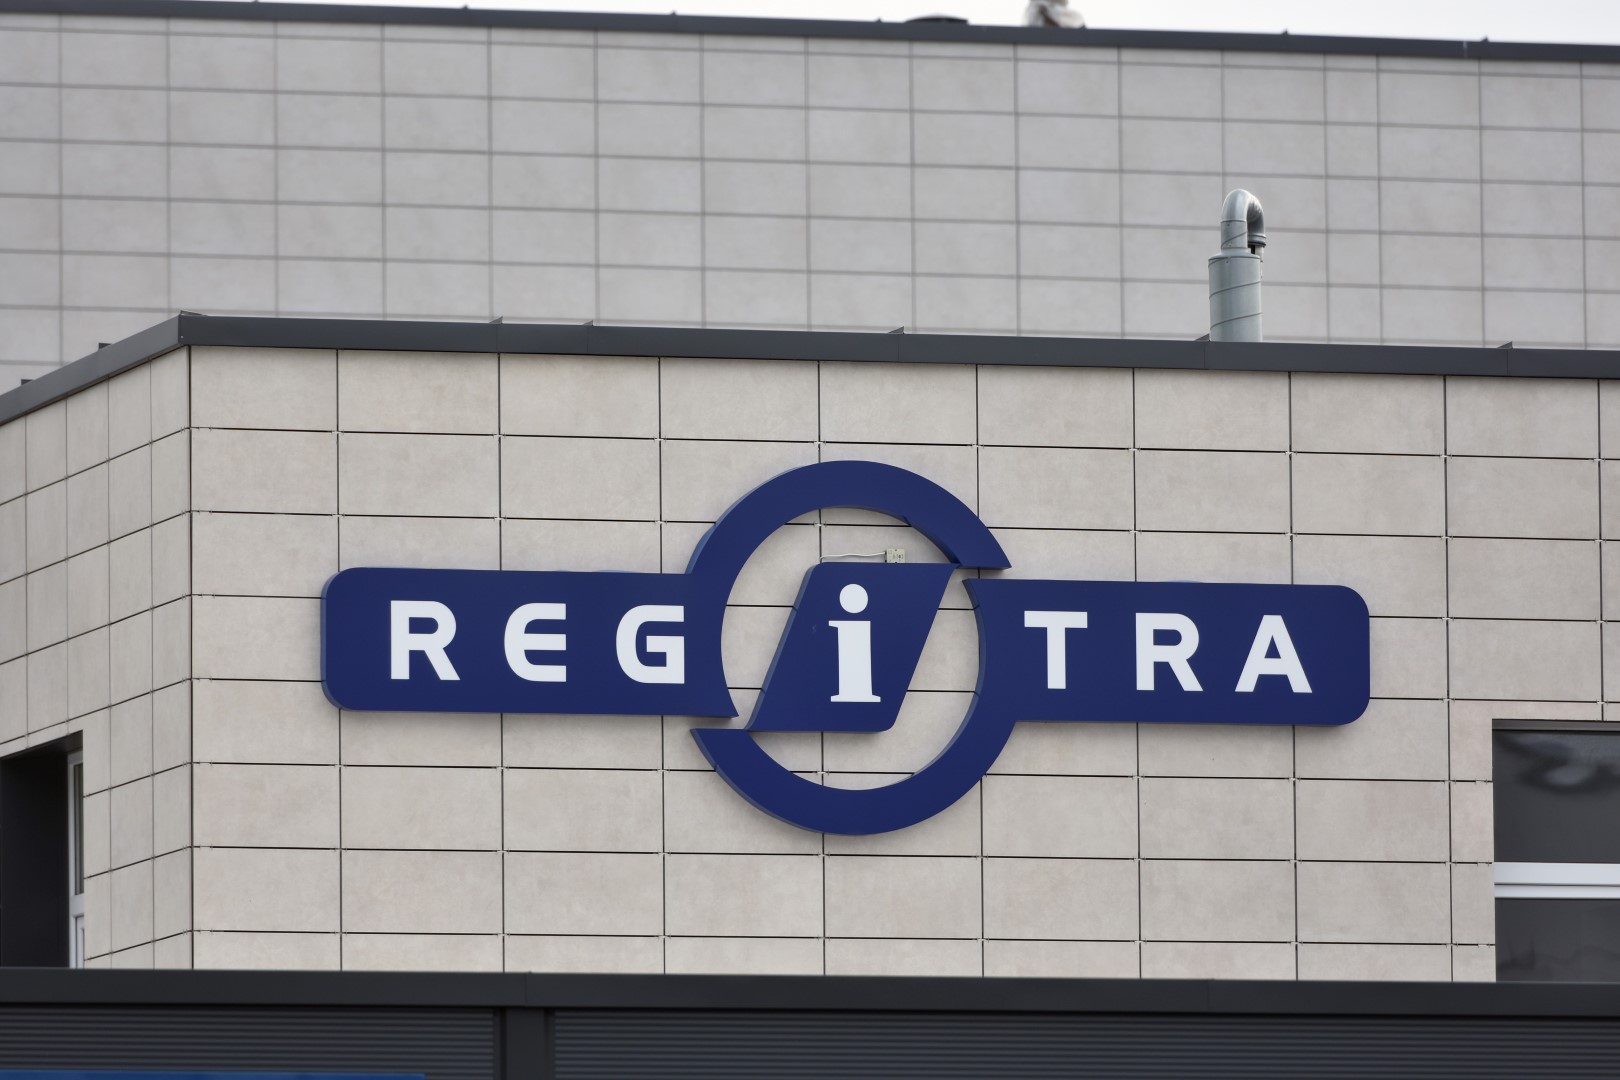 Be vertėjo į praktinį vairavimo egzaminą valstybinės įmonės „Regitra“ Panevėžio filiale atvykusio ukrainiečio laukė netikėtumas.